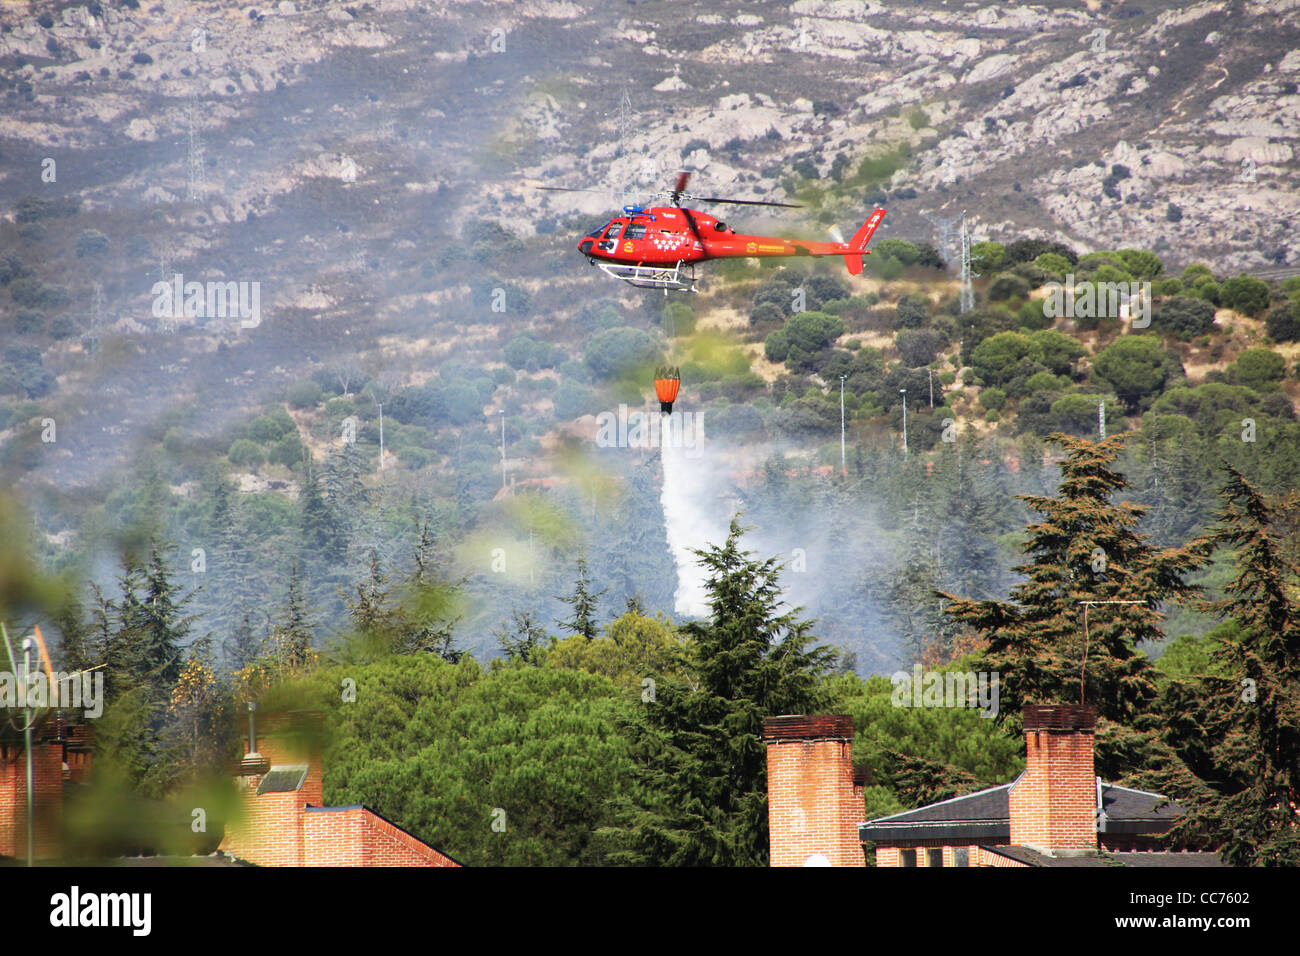 Feuerwehr Hubschrauber Feuer auf dem Berg Stockfoto